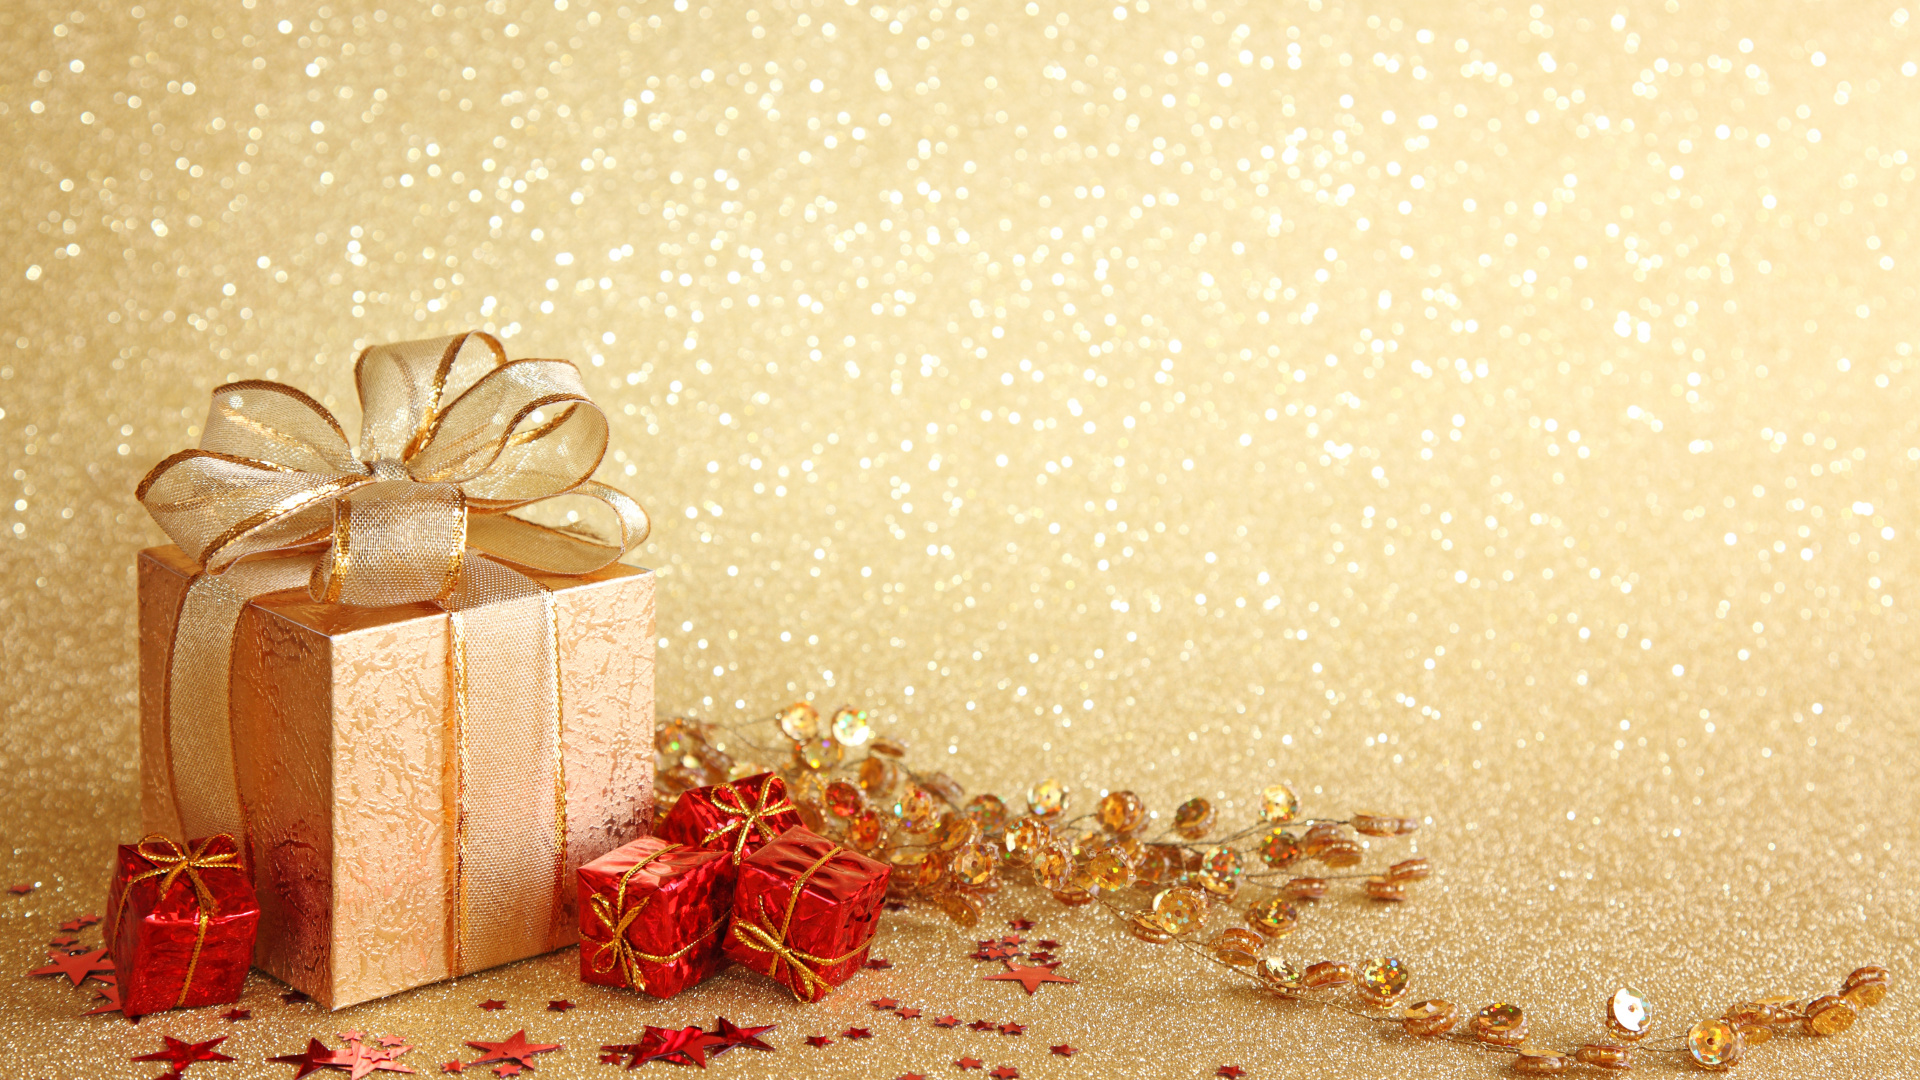 新的一年, 圣诞节那天, 礼品包装, 丝带, 圣诞装饰 壁纸 1920x1080 允许